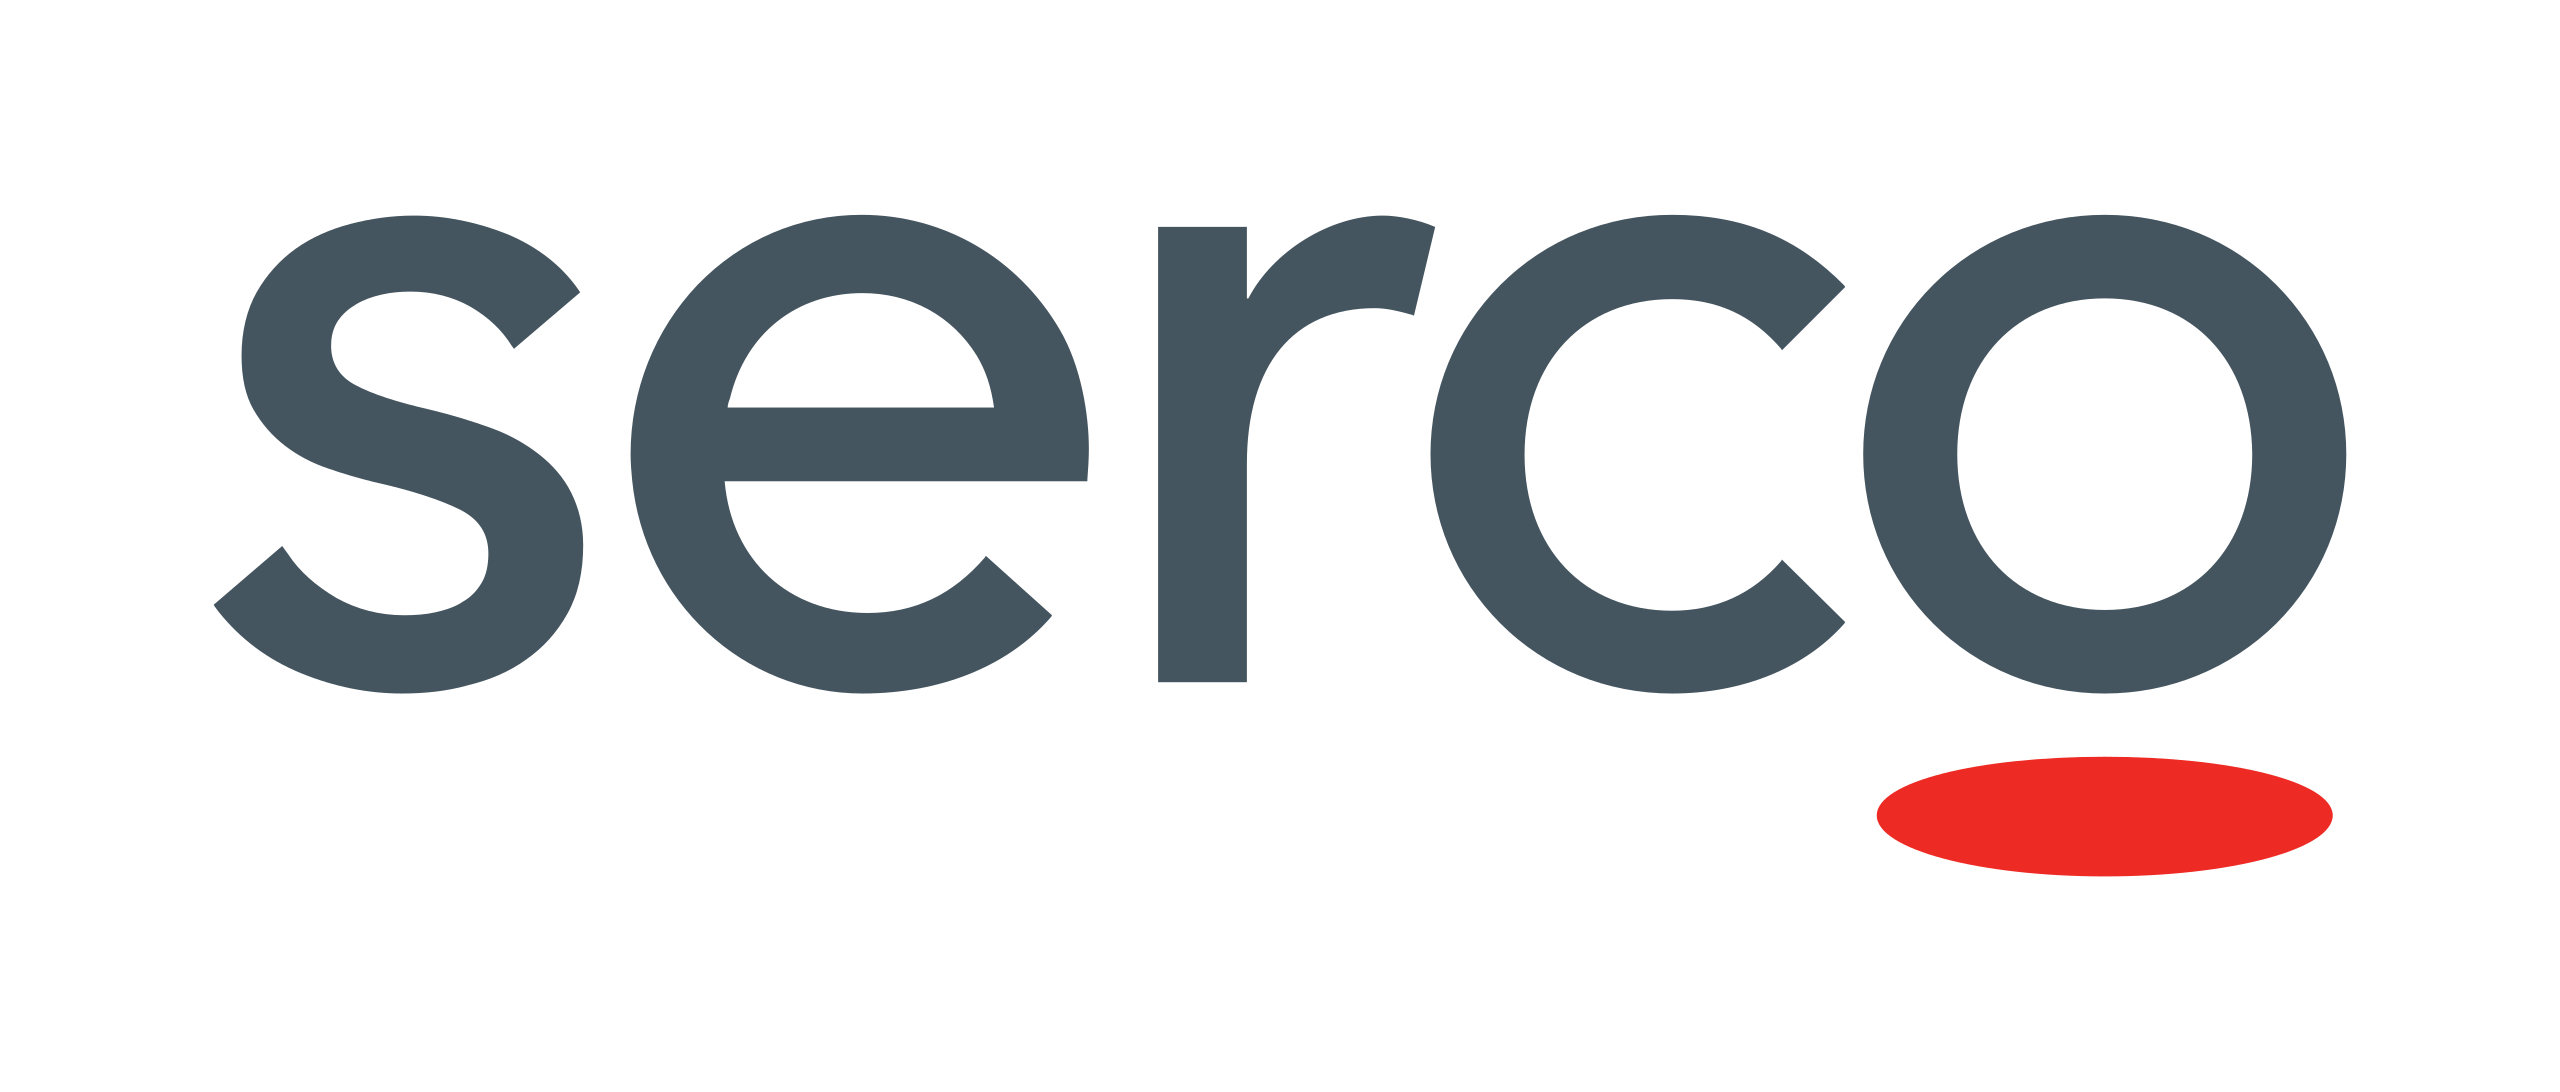 2560px-Serco_logo.svg